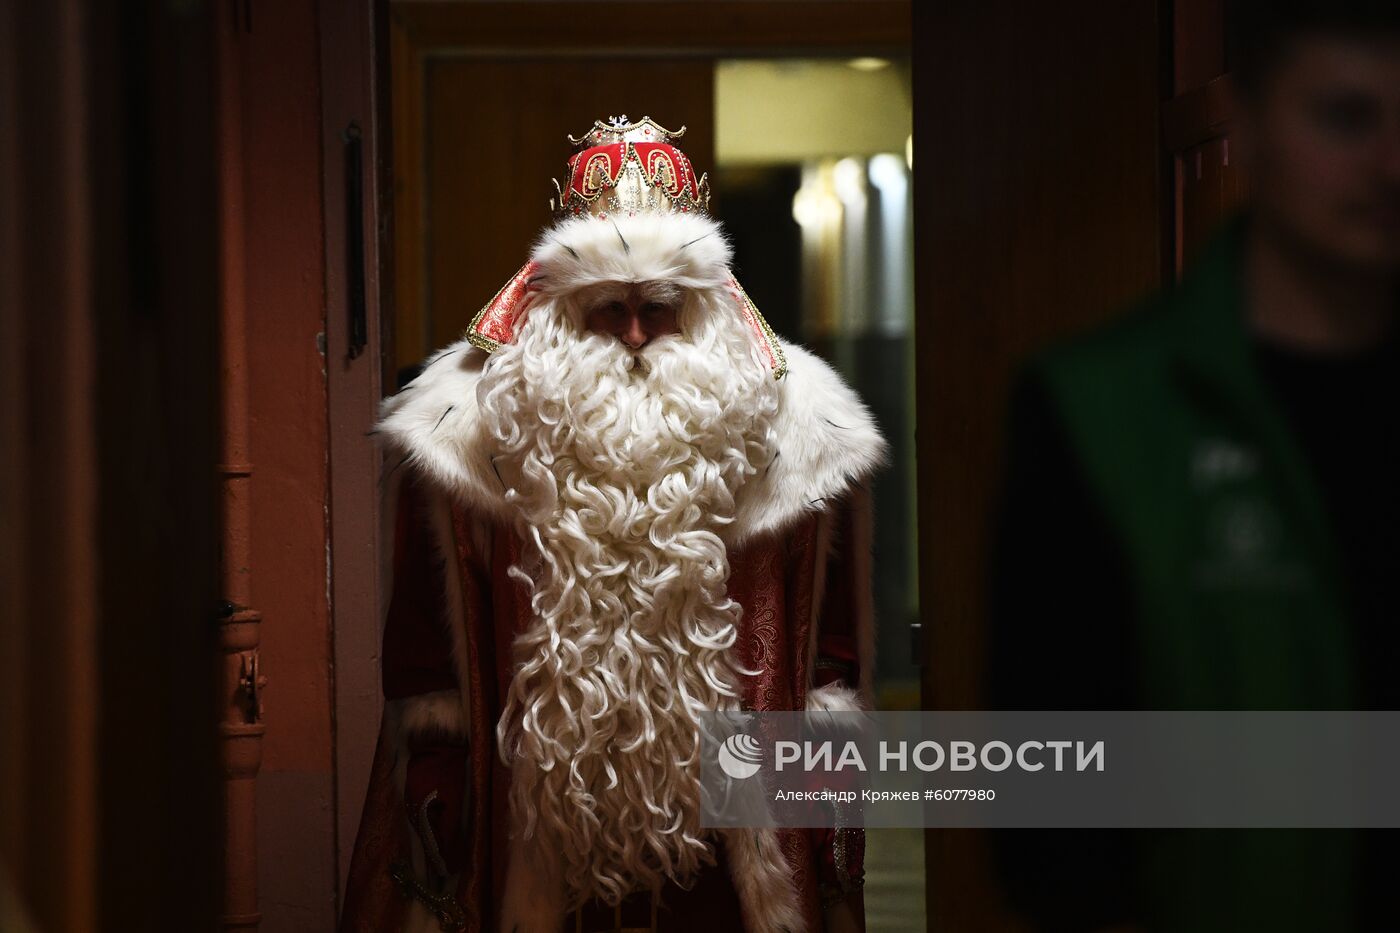 Всероссийский Дед Мороз посетил Новосибирск